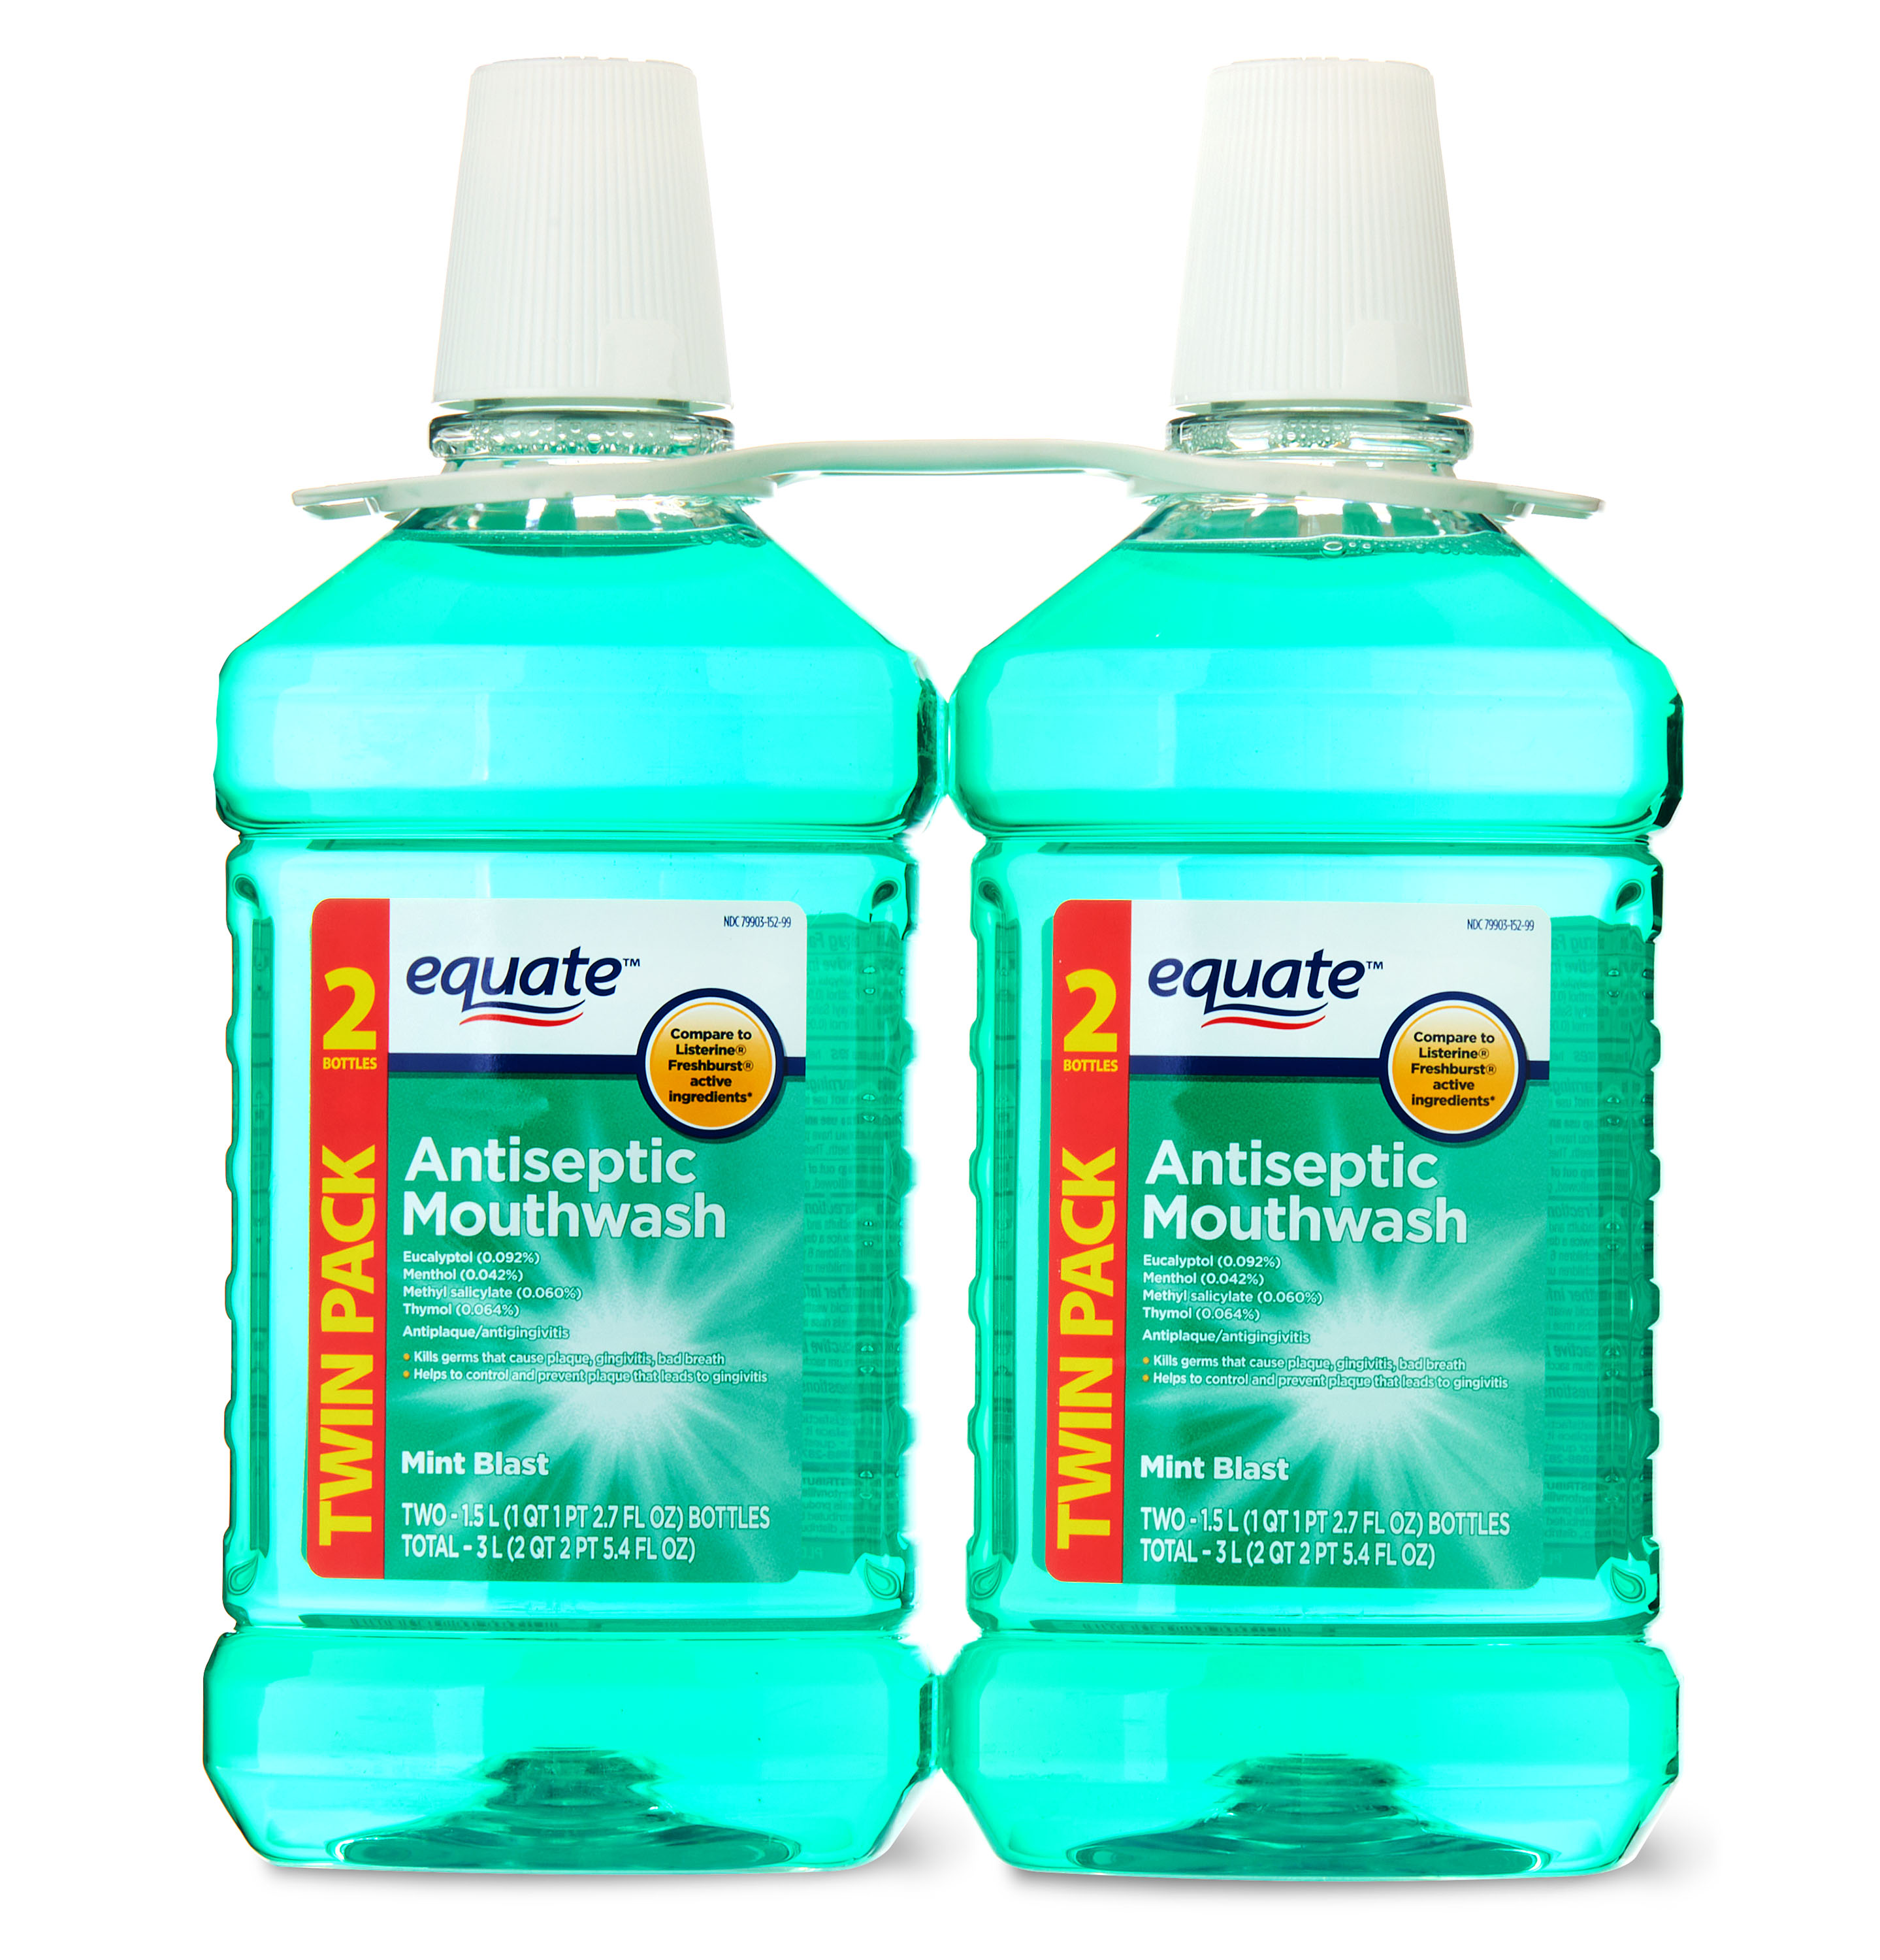 Equate Antiseptic Mouthwash, Mint Blast, Twinpack, 2 Bottles, 2 x 1.5 Liters (50.7 fl oz) - image 1 of 7